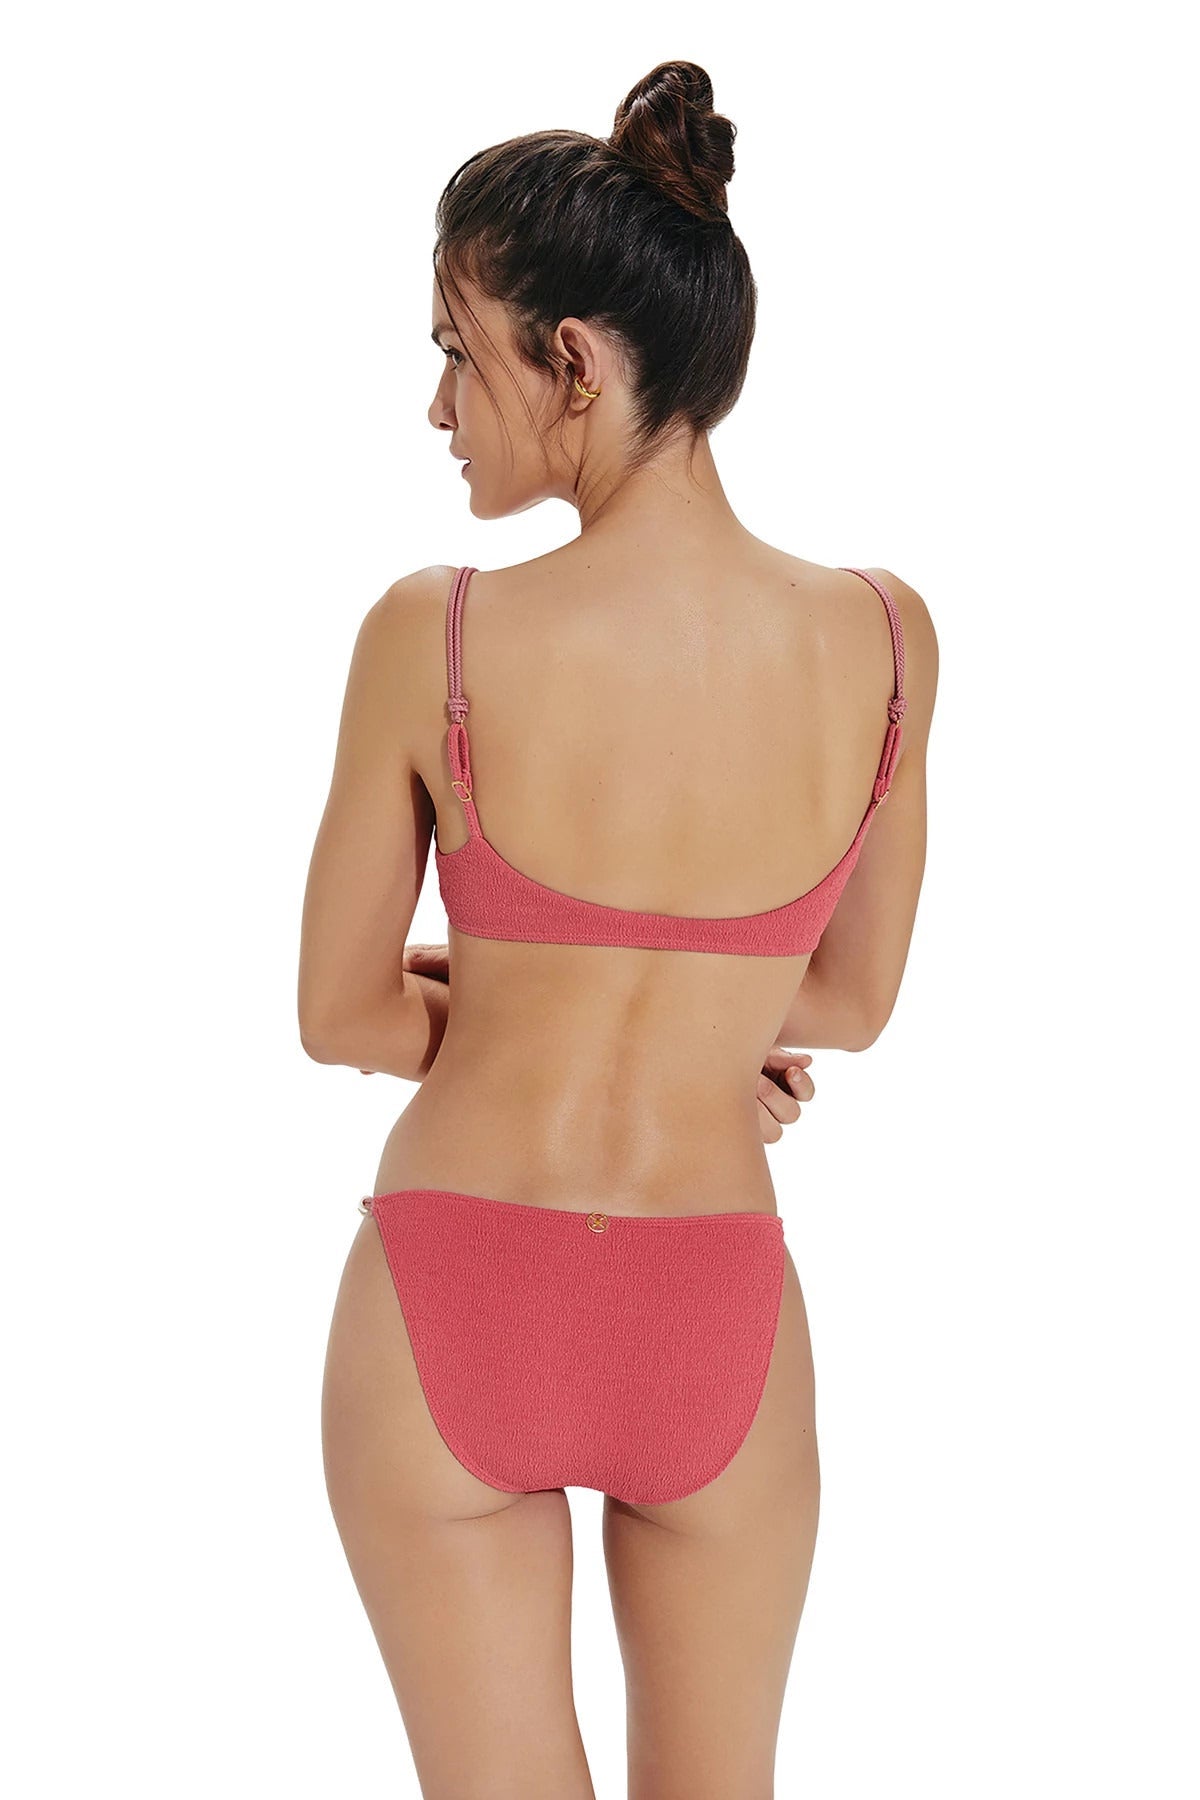 Vix Swimwear Women's Zene Bralette Bikini Top